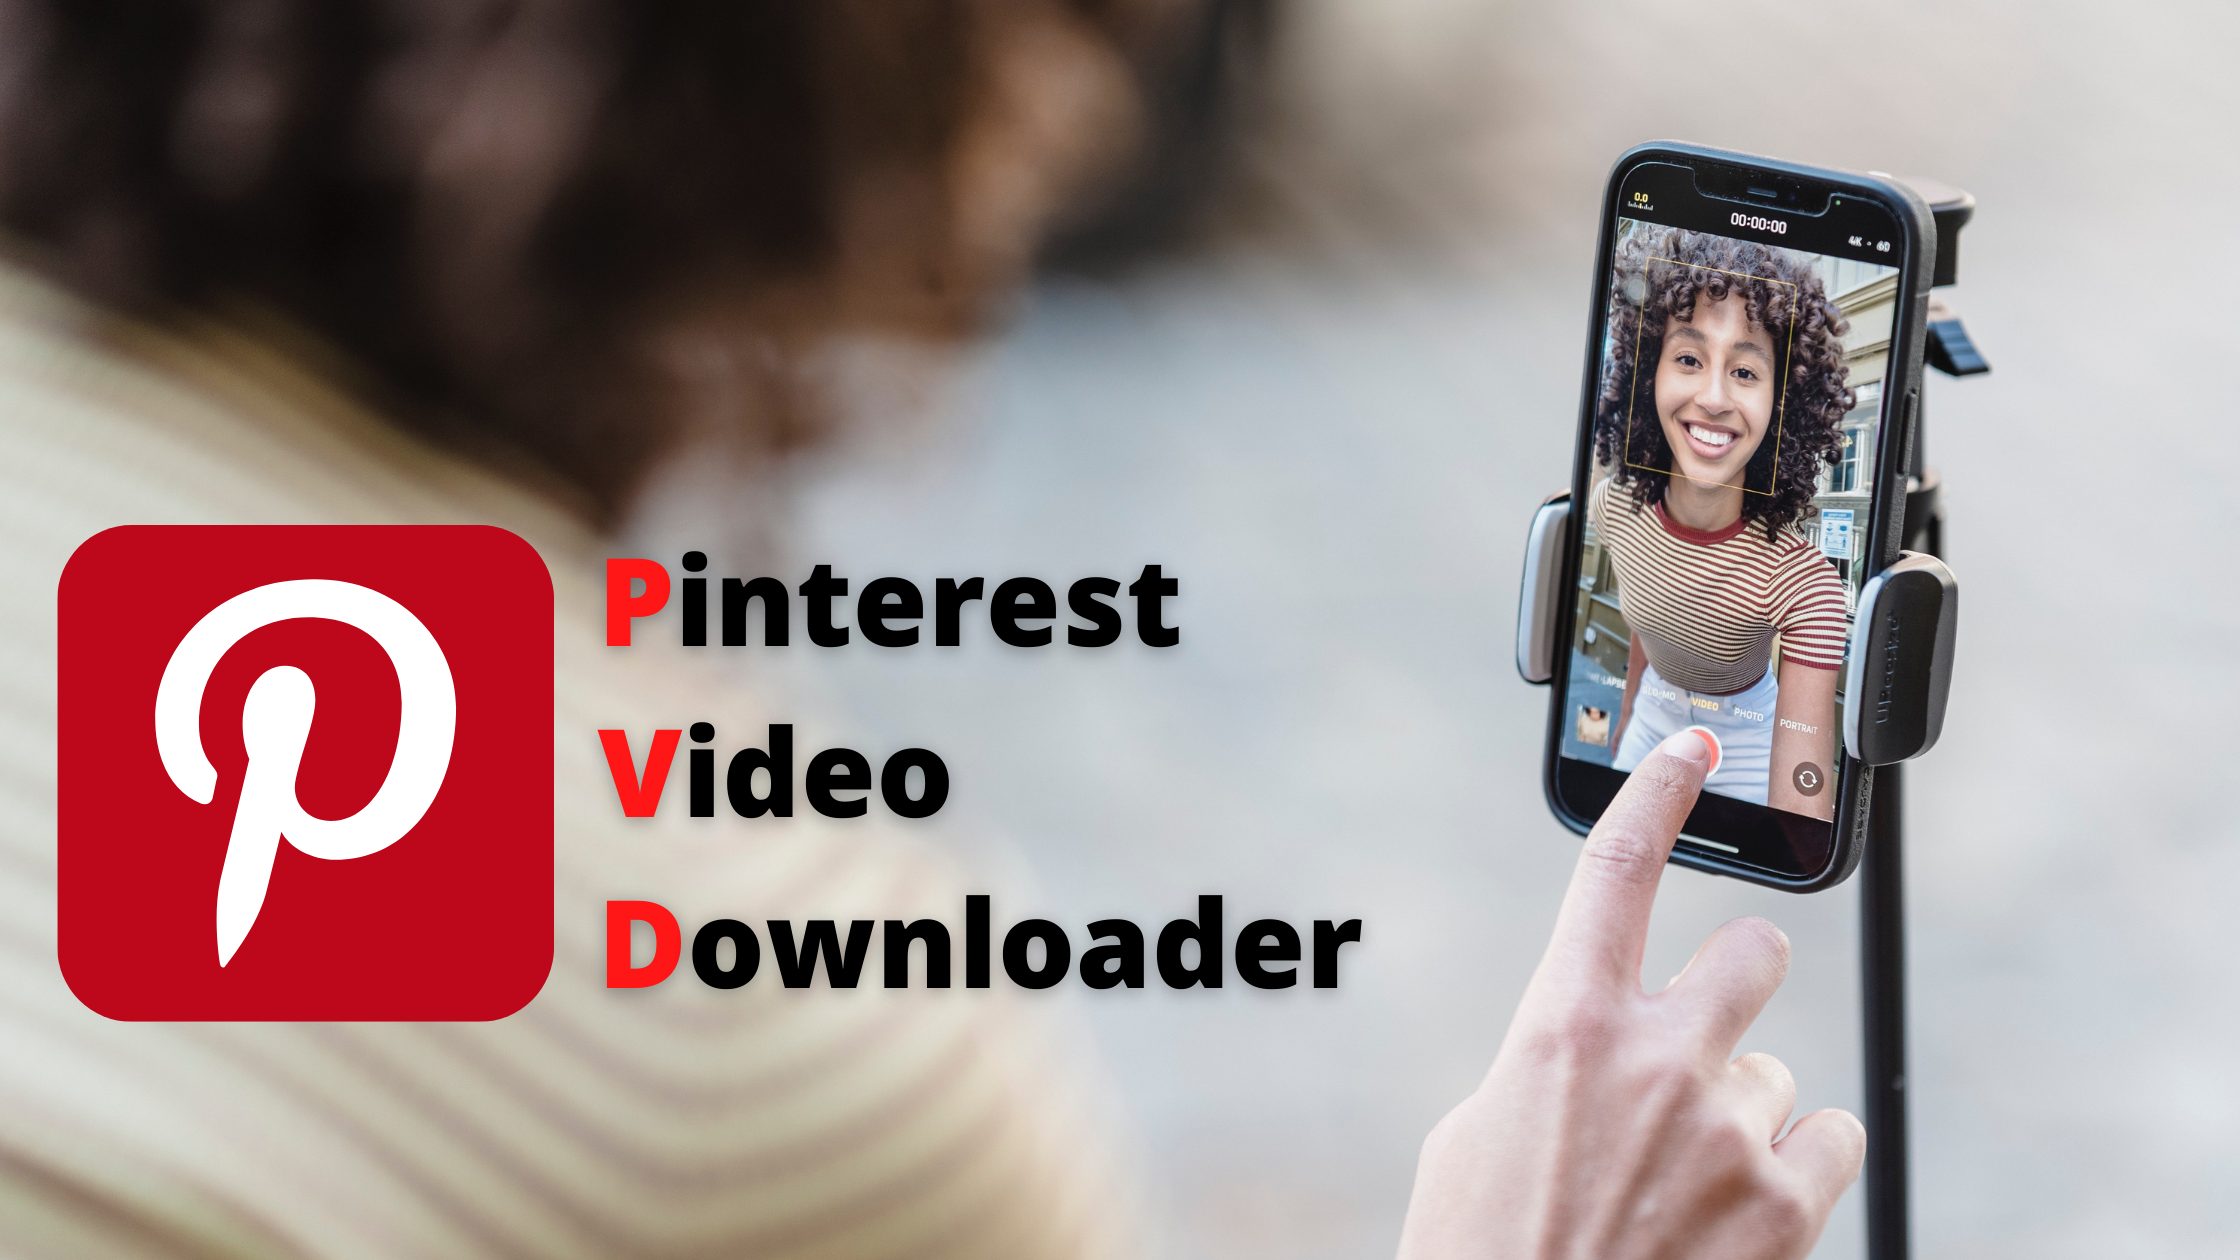 pinterest video downloader 4k quality